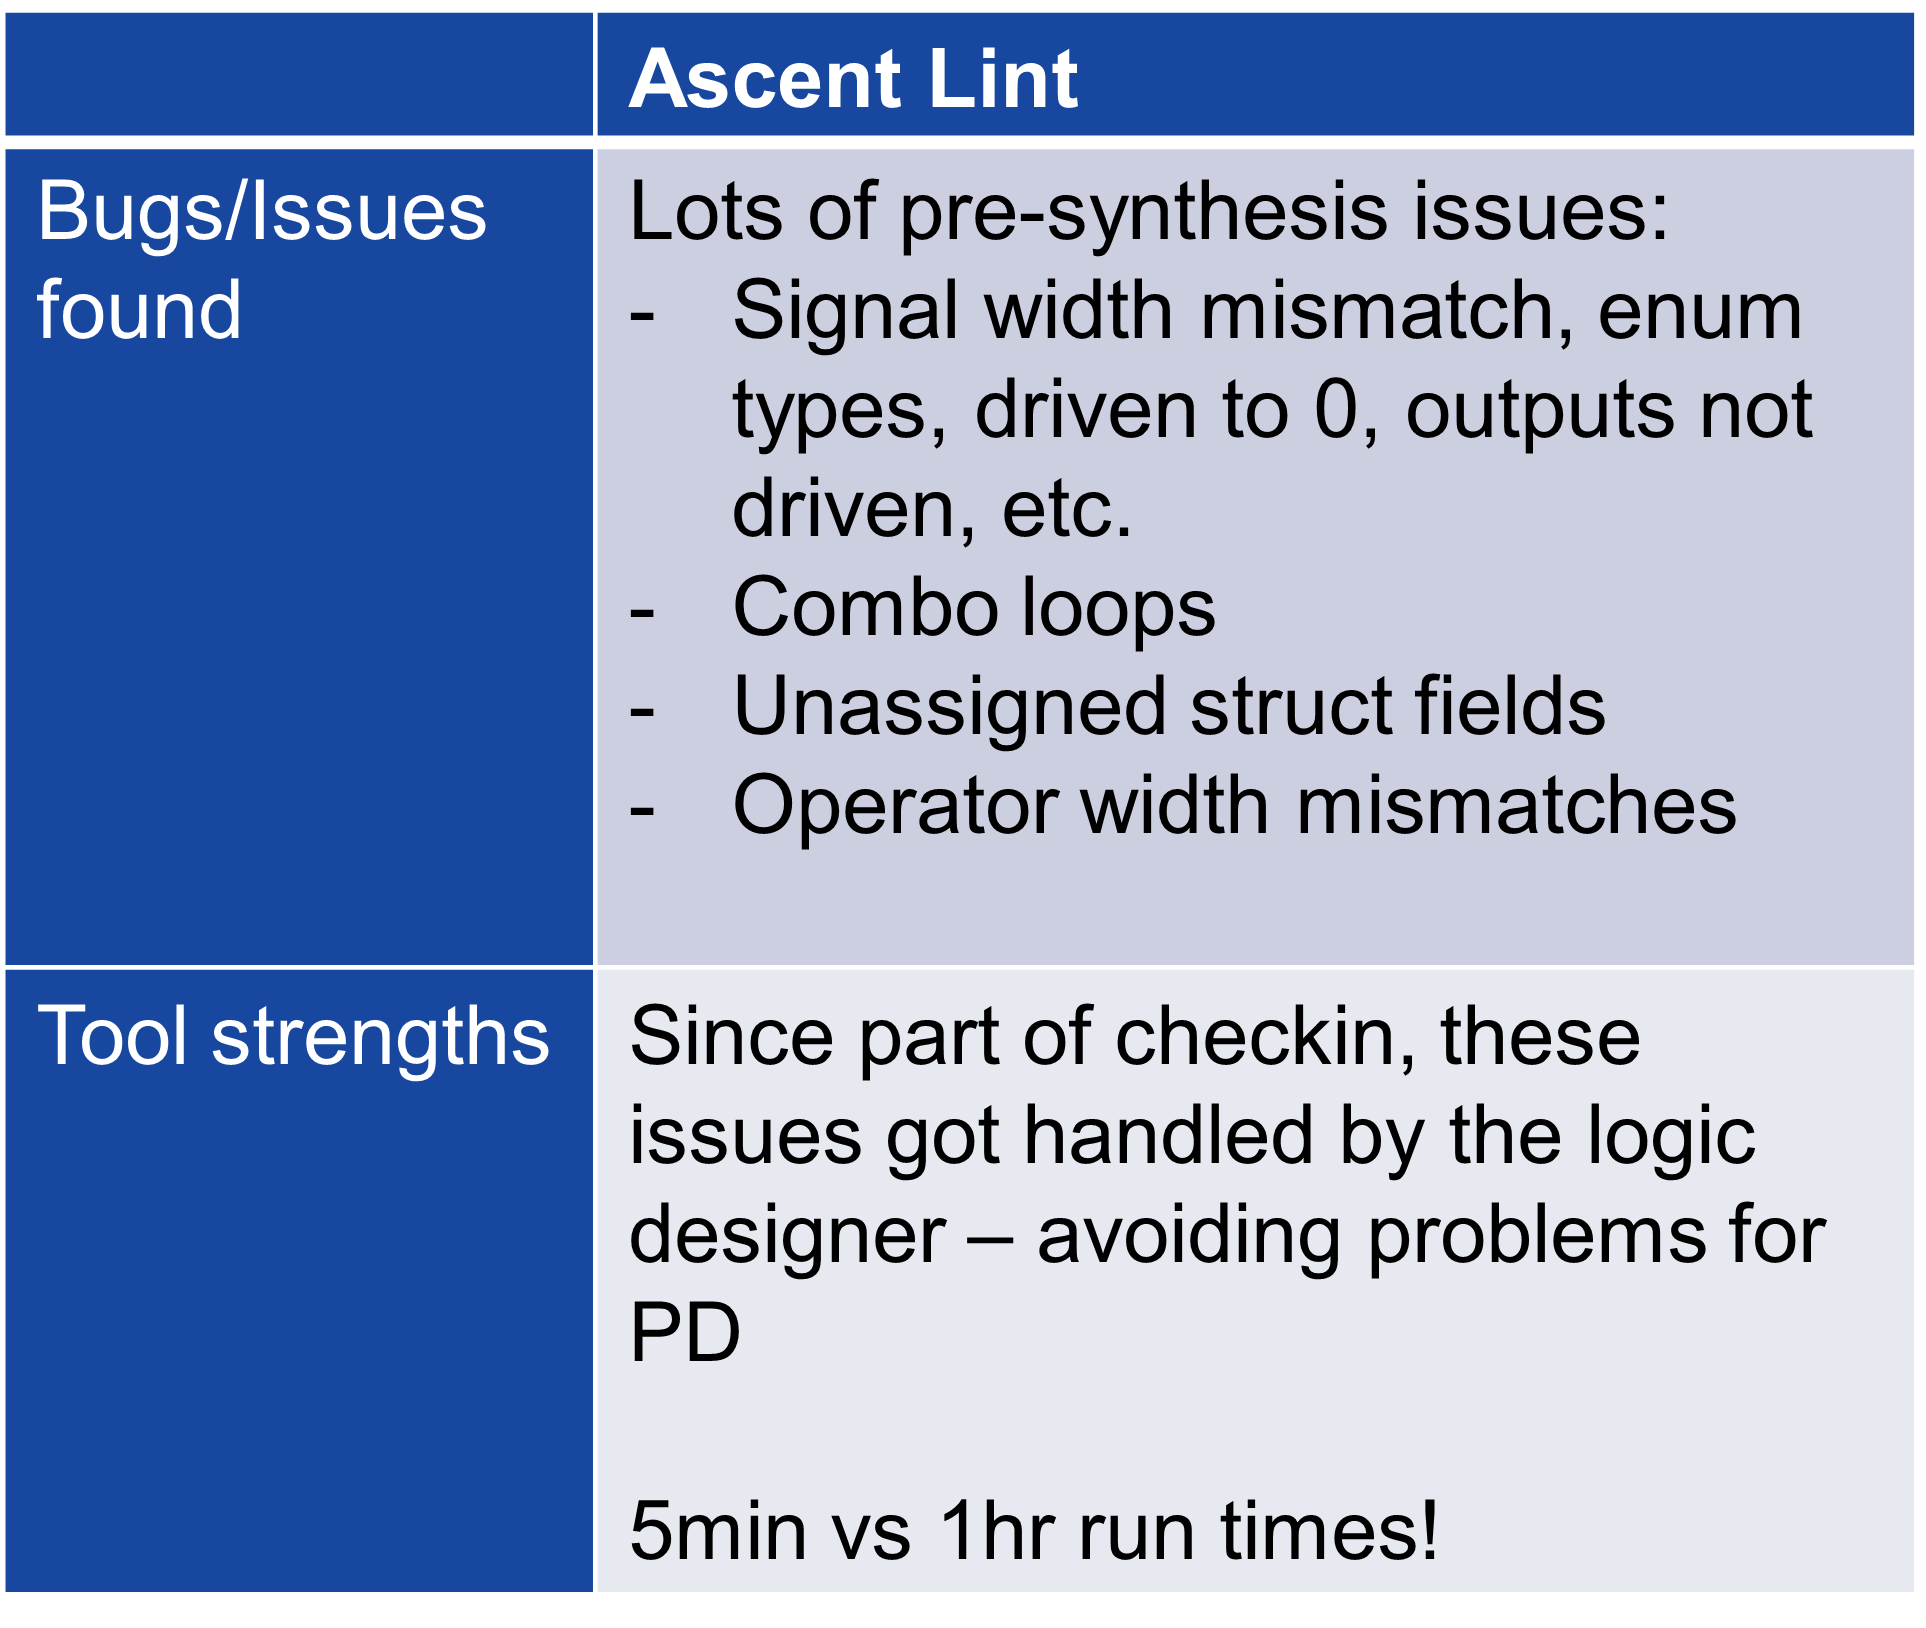 Ascent Lint